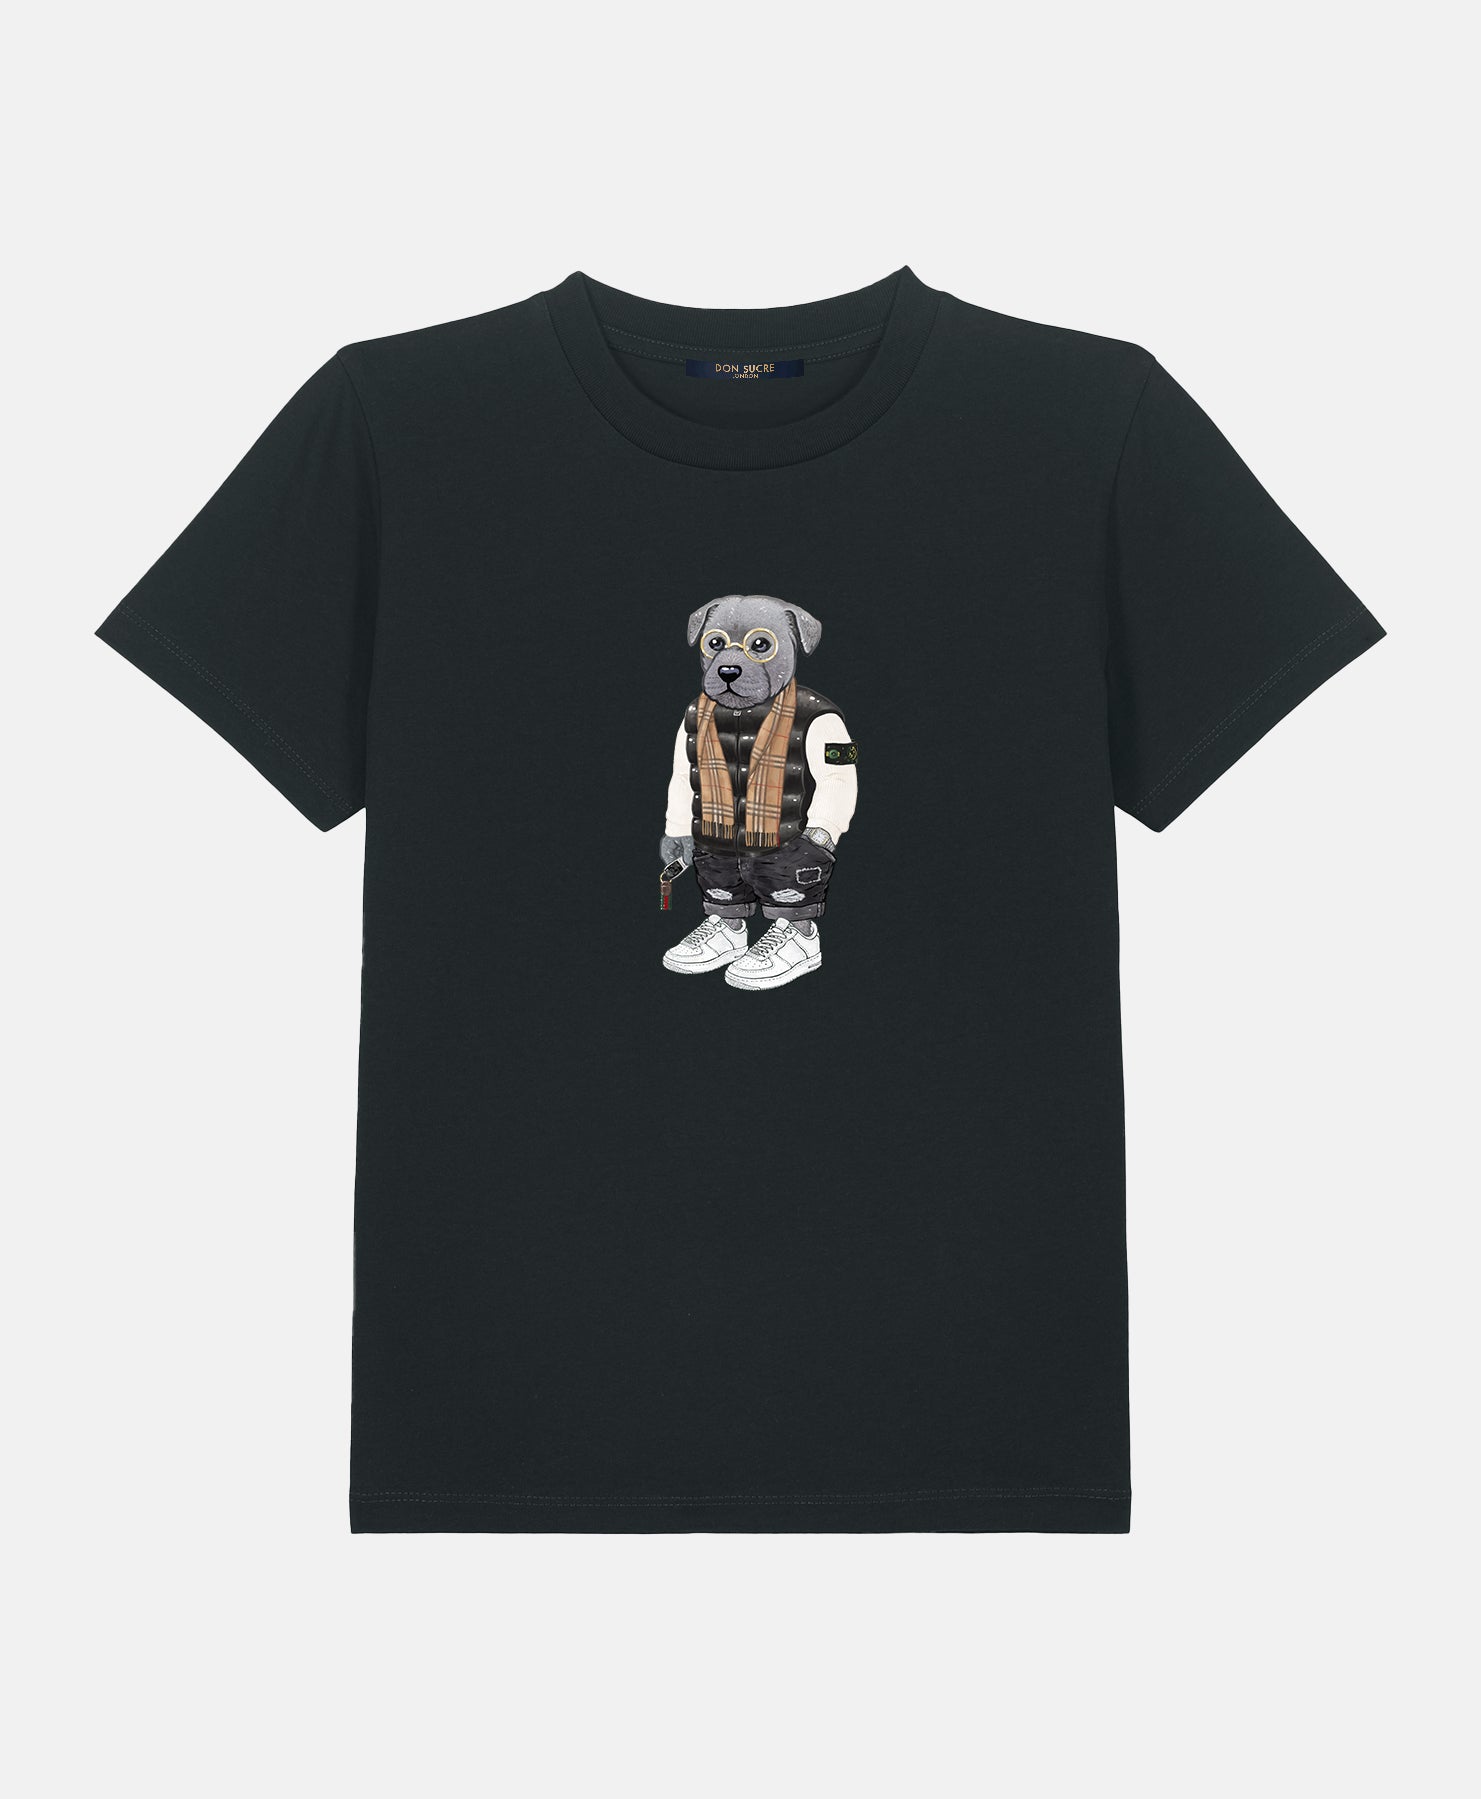 Staffordshire Bull Terrier T-Shirt Kids Black